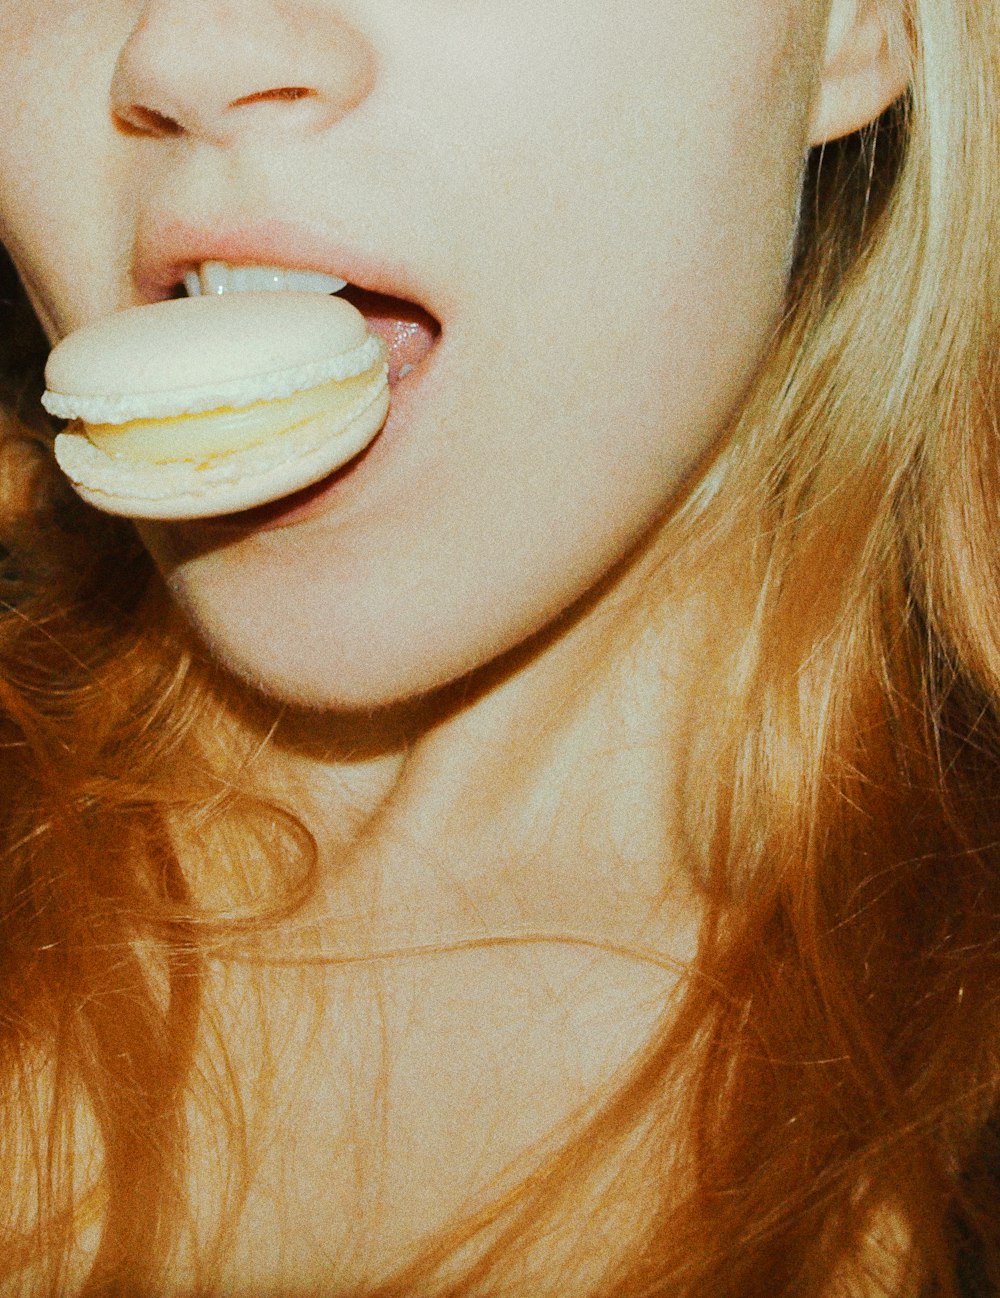 mulher com sorvete branco em sua boca